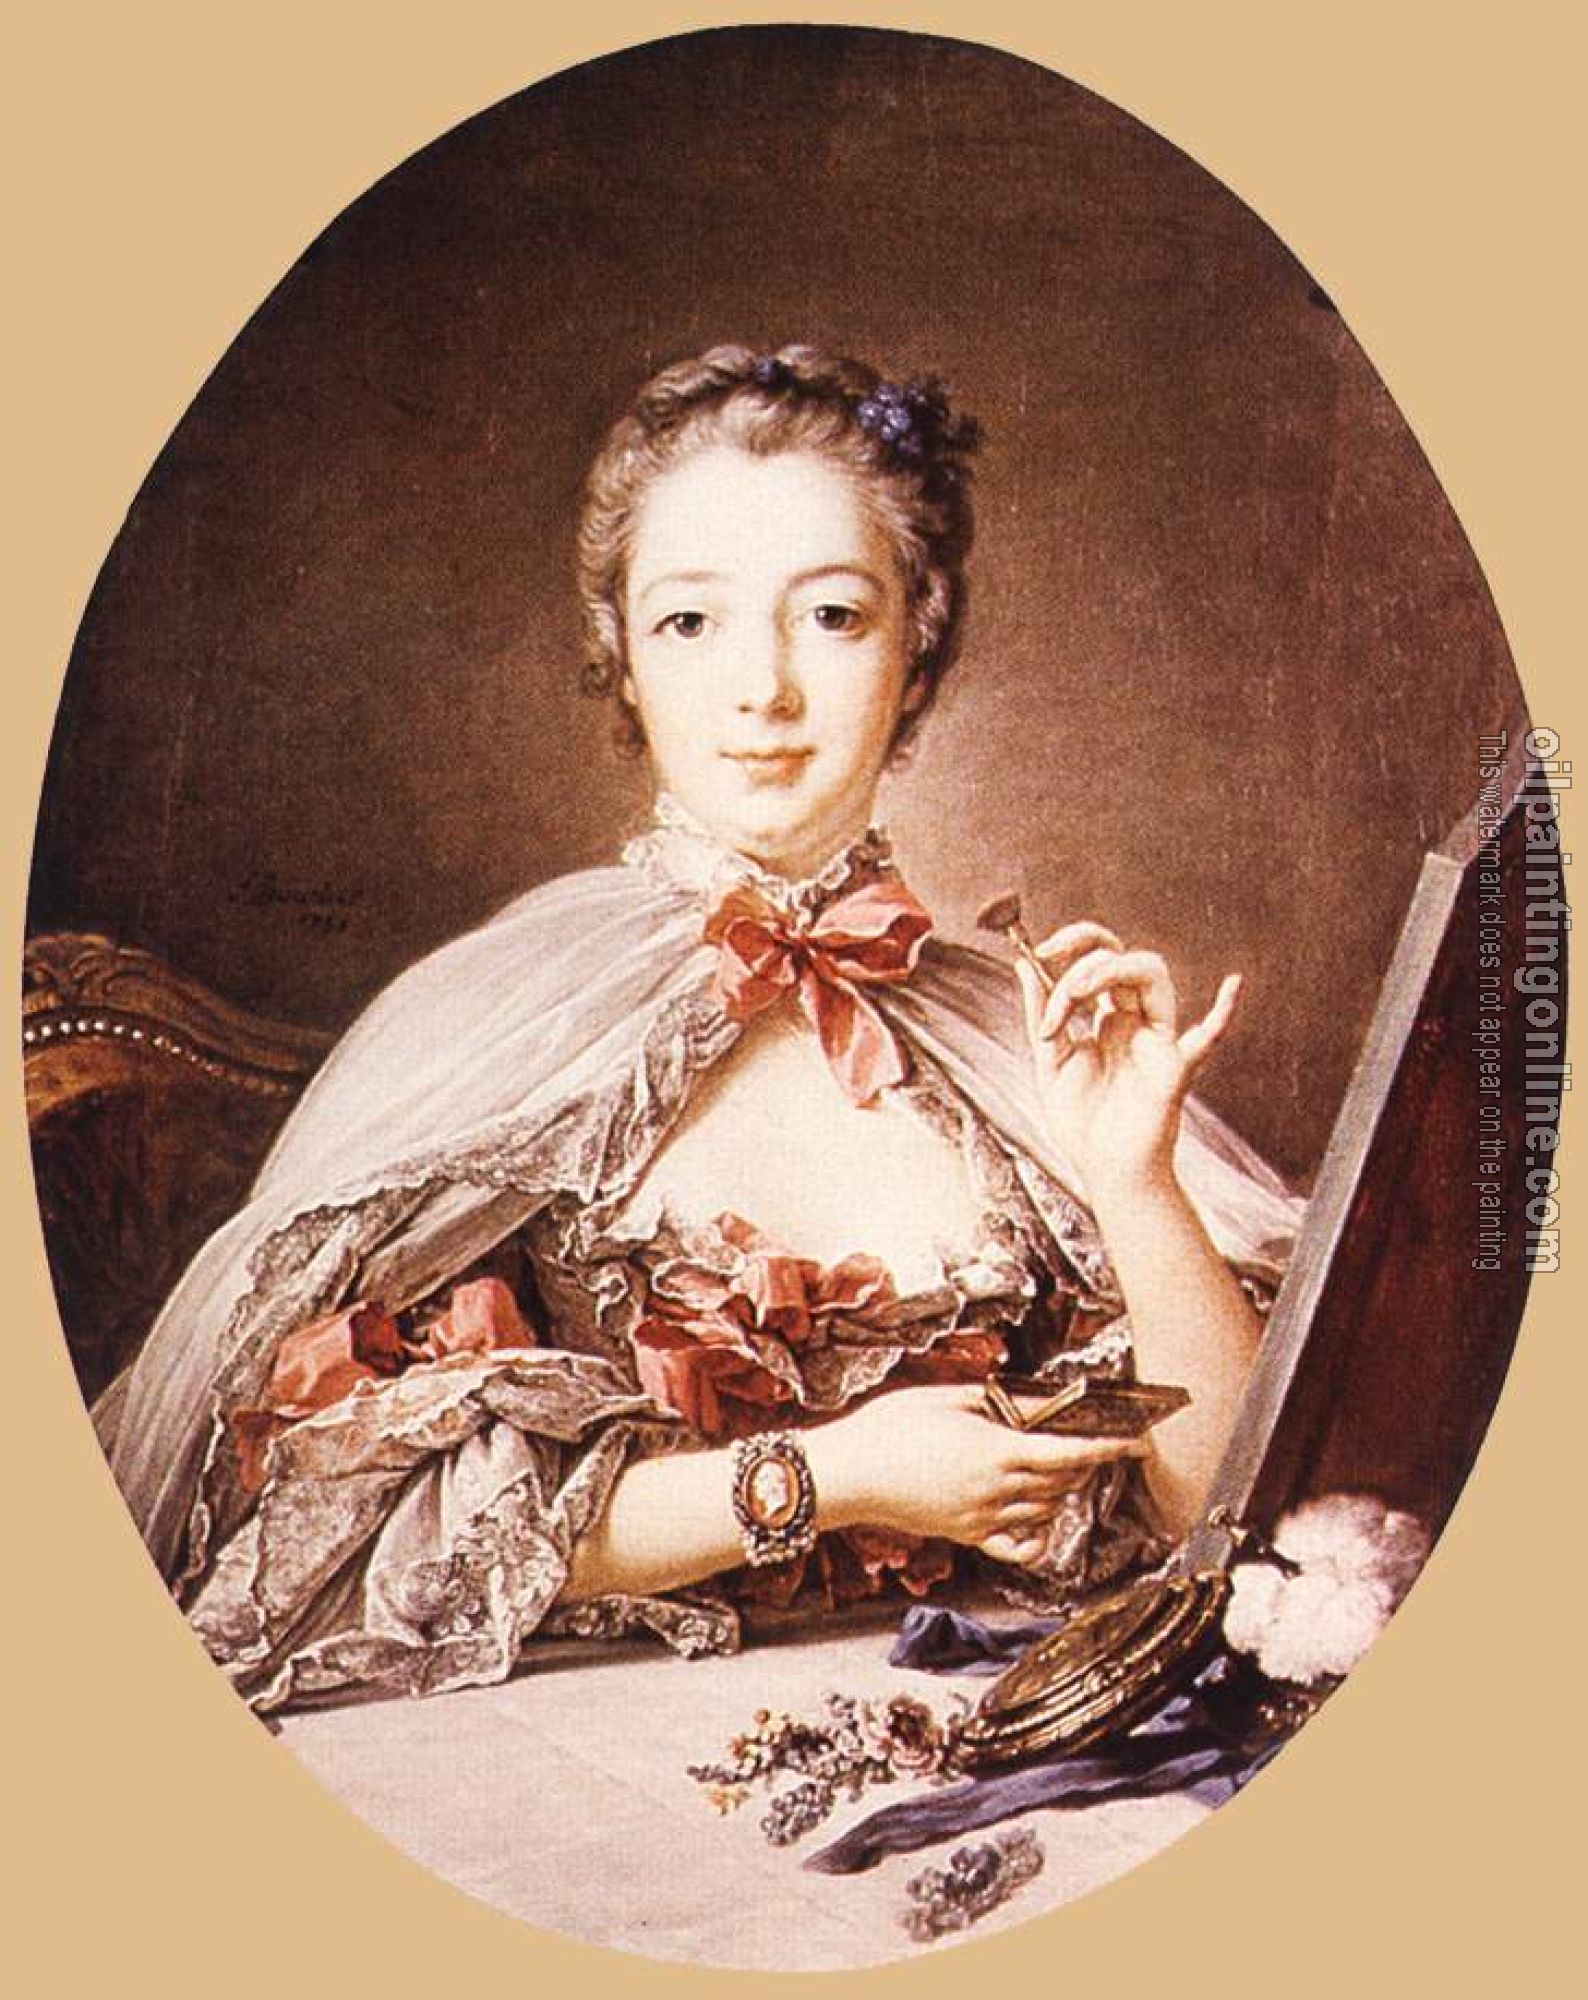 Boucher, Francois - Marquise de Pompadour at the Toilet-Table